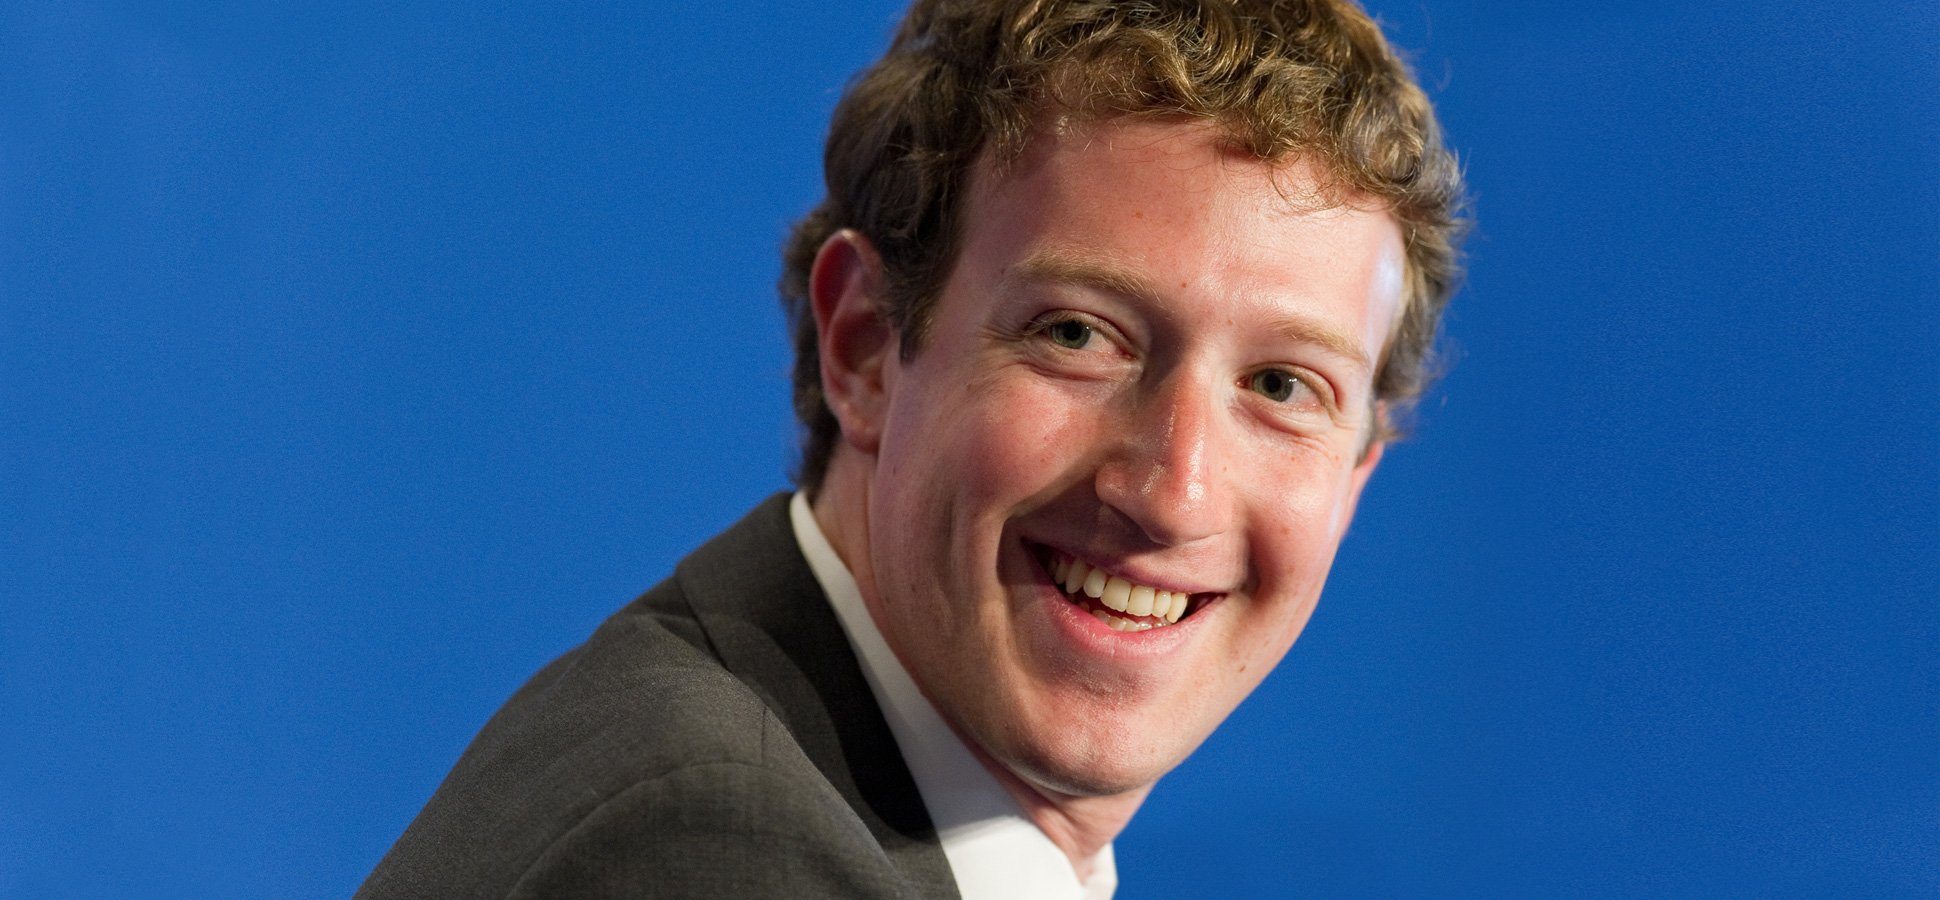 I 5 Imperdibili Segreti del Multimiliardario CEO di Facebook Mark Zuckerberg